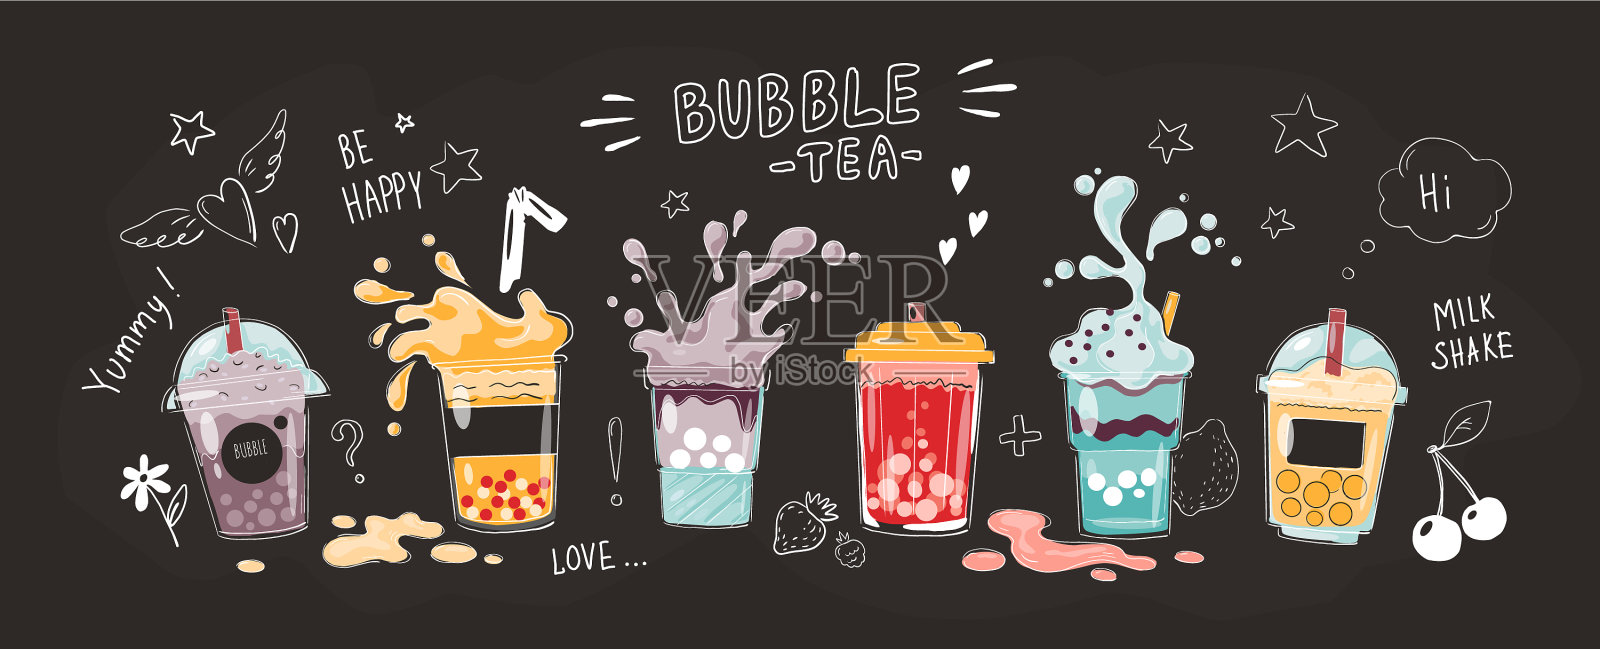 泡泡茶杯卡通手绘海报甜设计模板素材